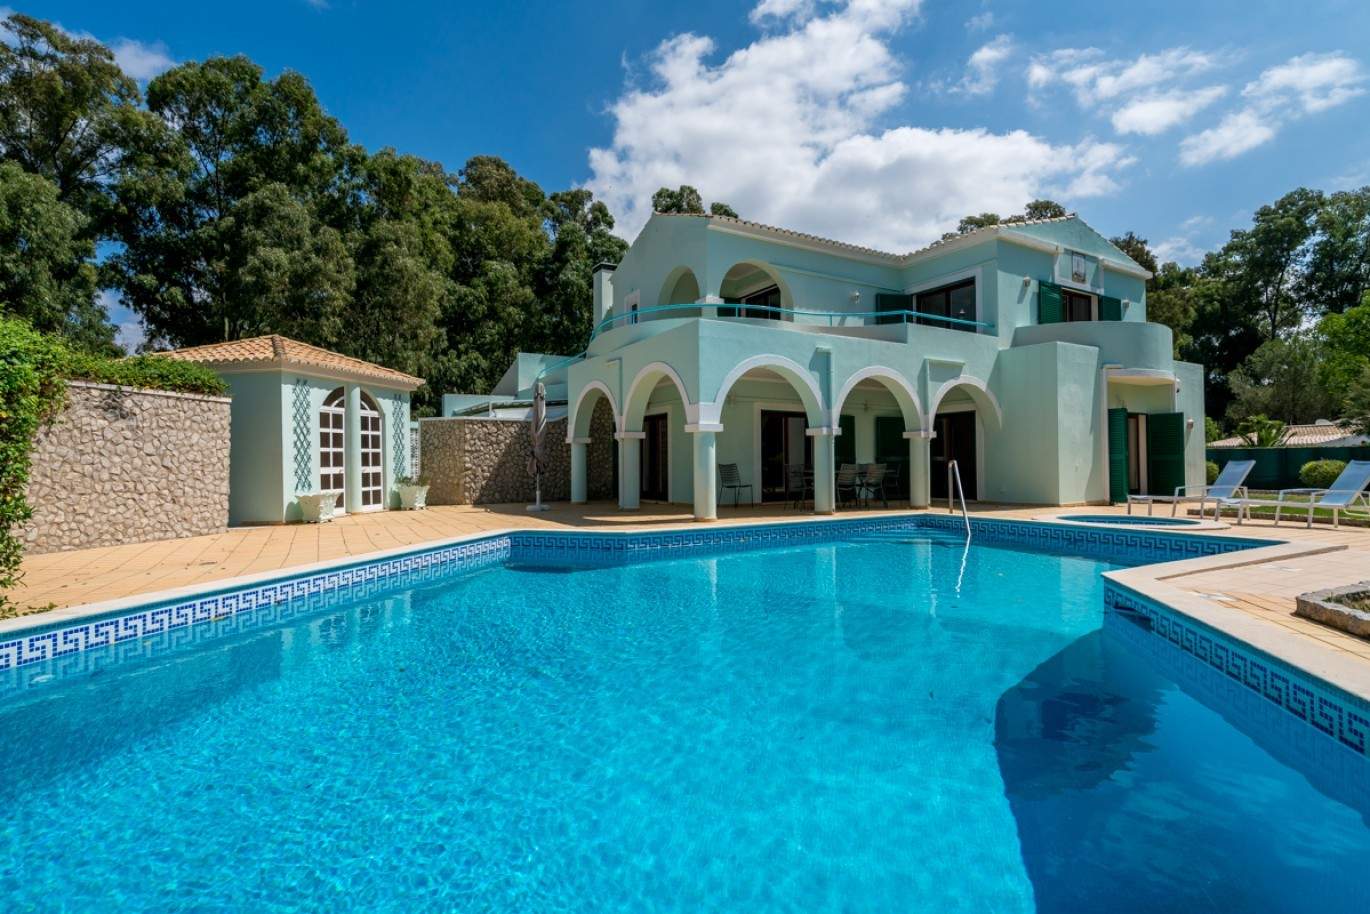 Venda de moradia com piscina na Penina, Alvor, Algarve, Portugal_83422